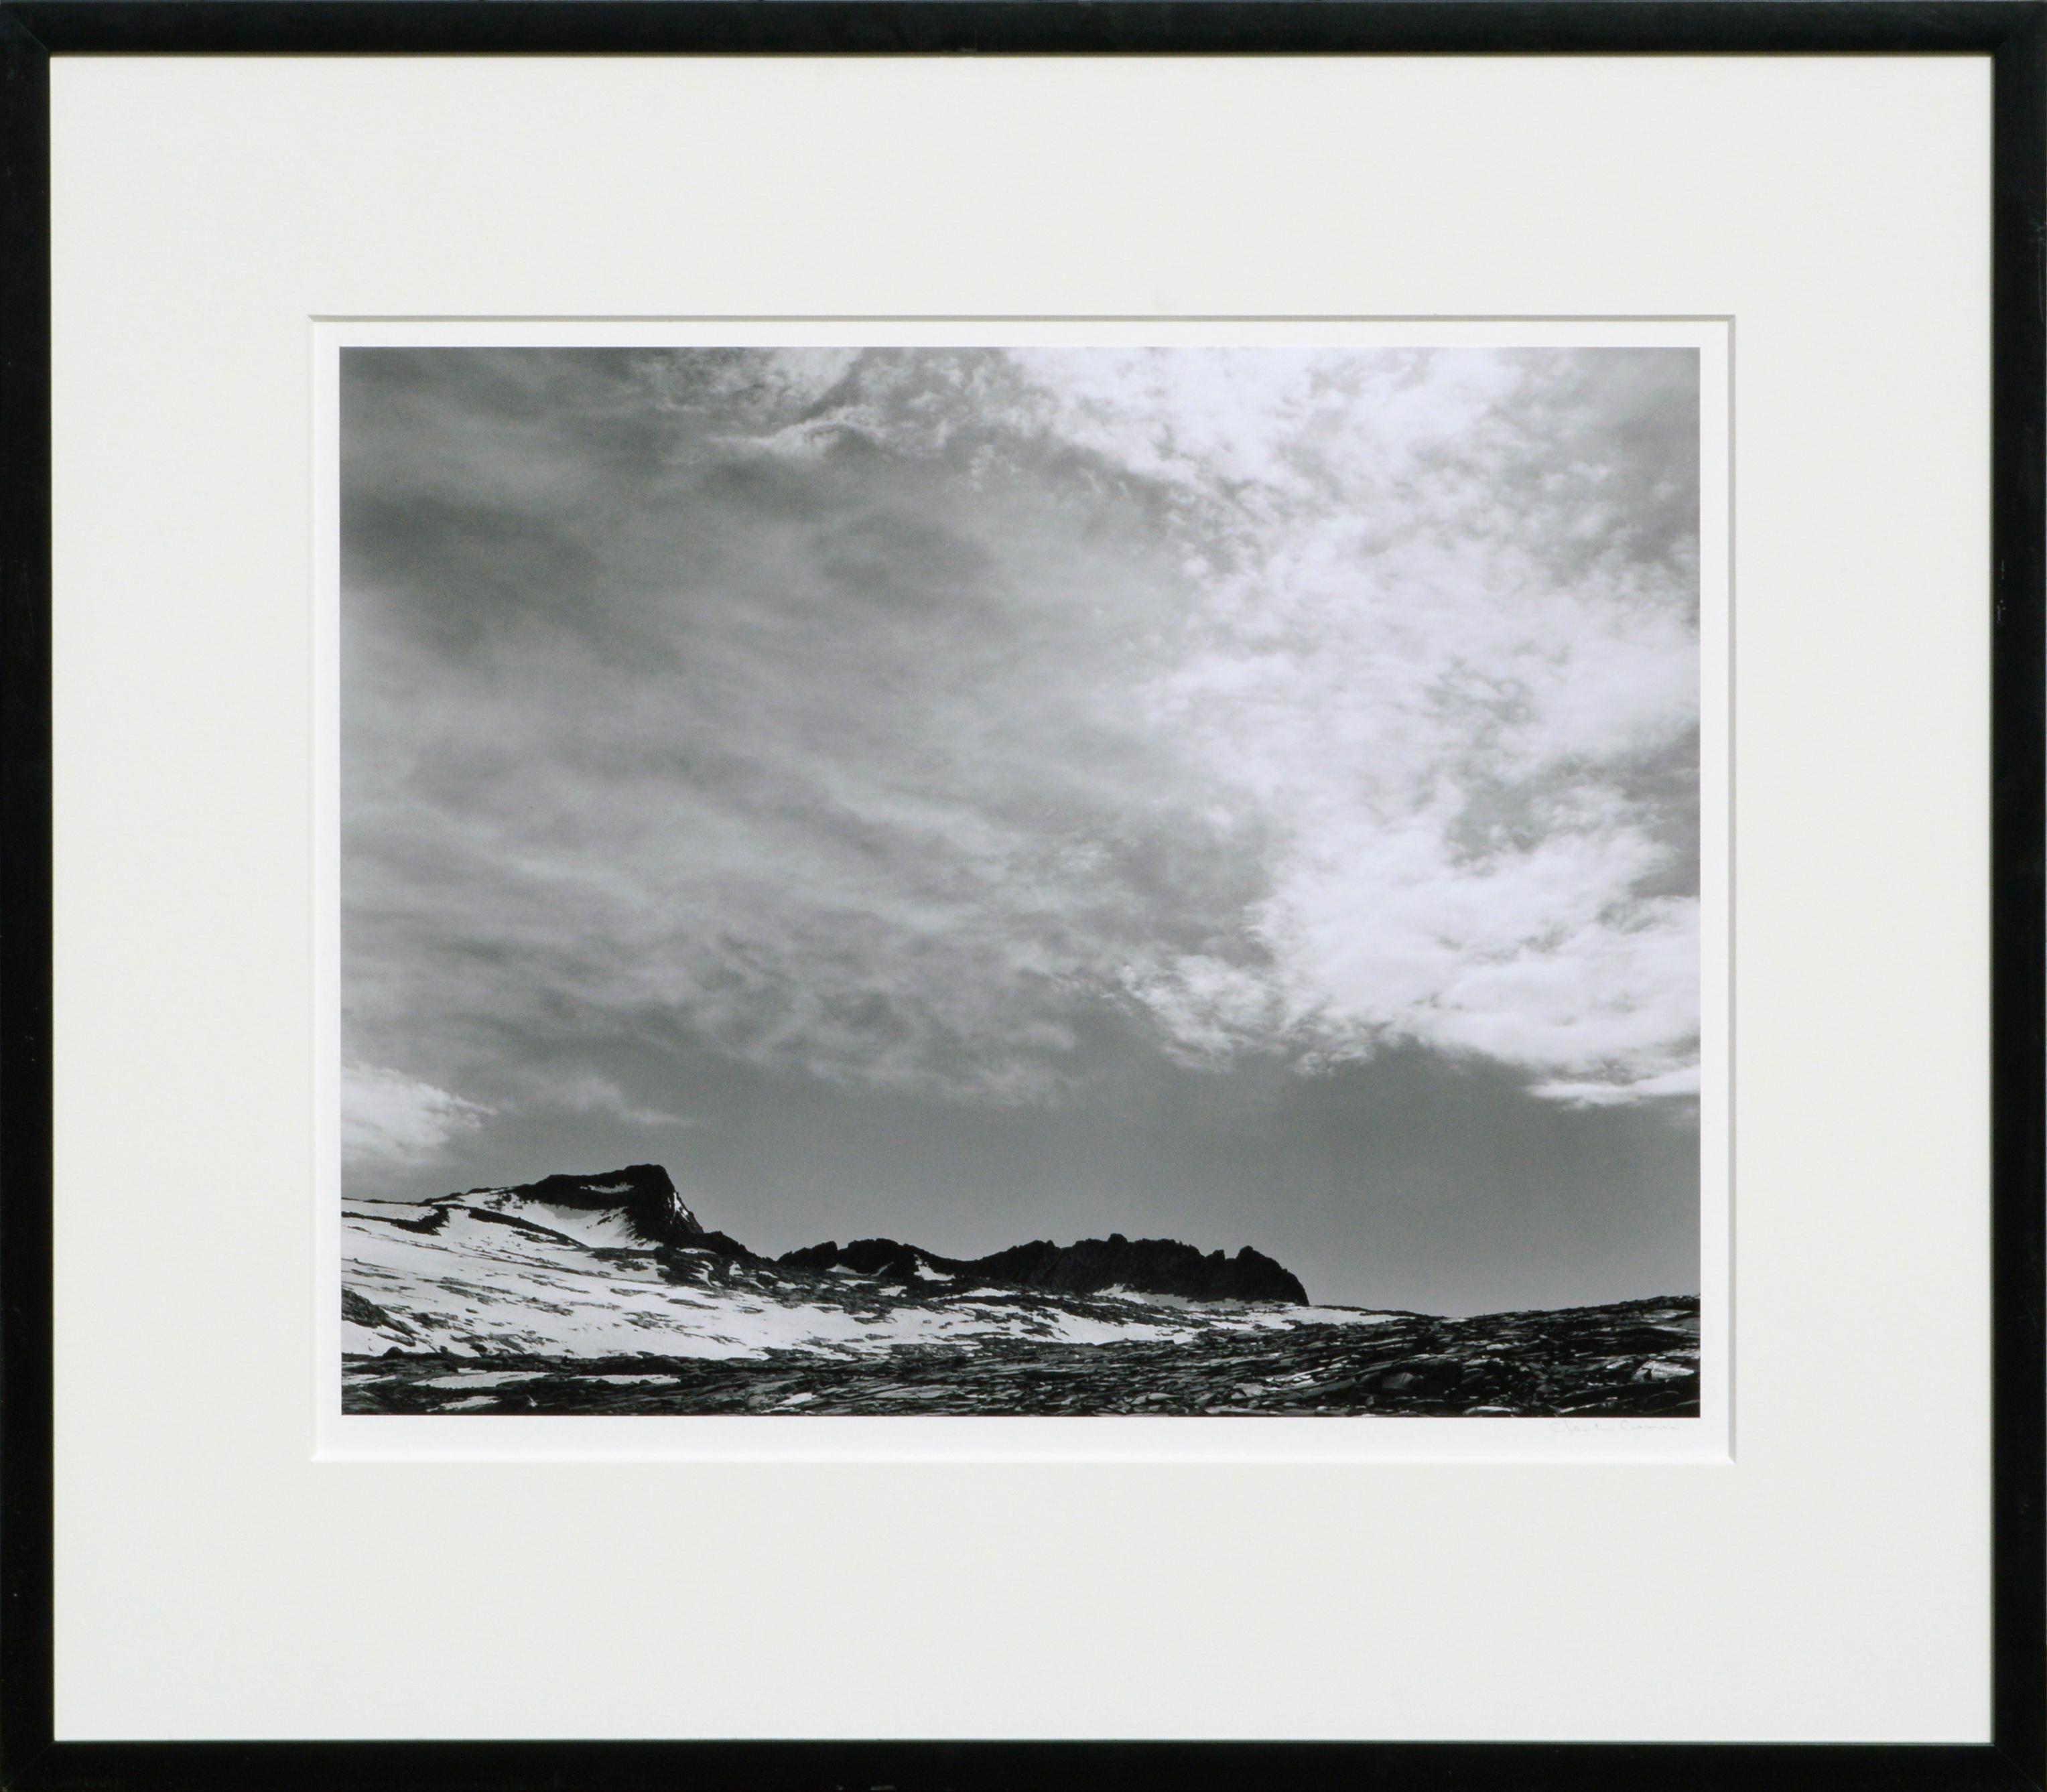 Charles Cramer Black and White Photograph – Mt Lyell Clouds, Yosemite – Schwarz-Weiß-Landschaftsfotografie in Kalifornien